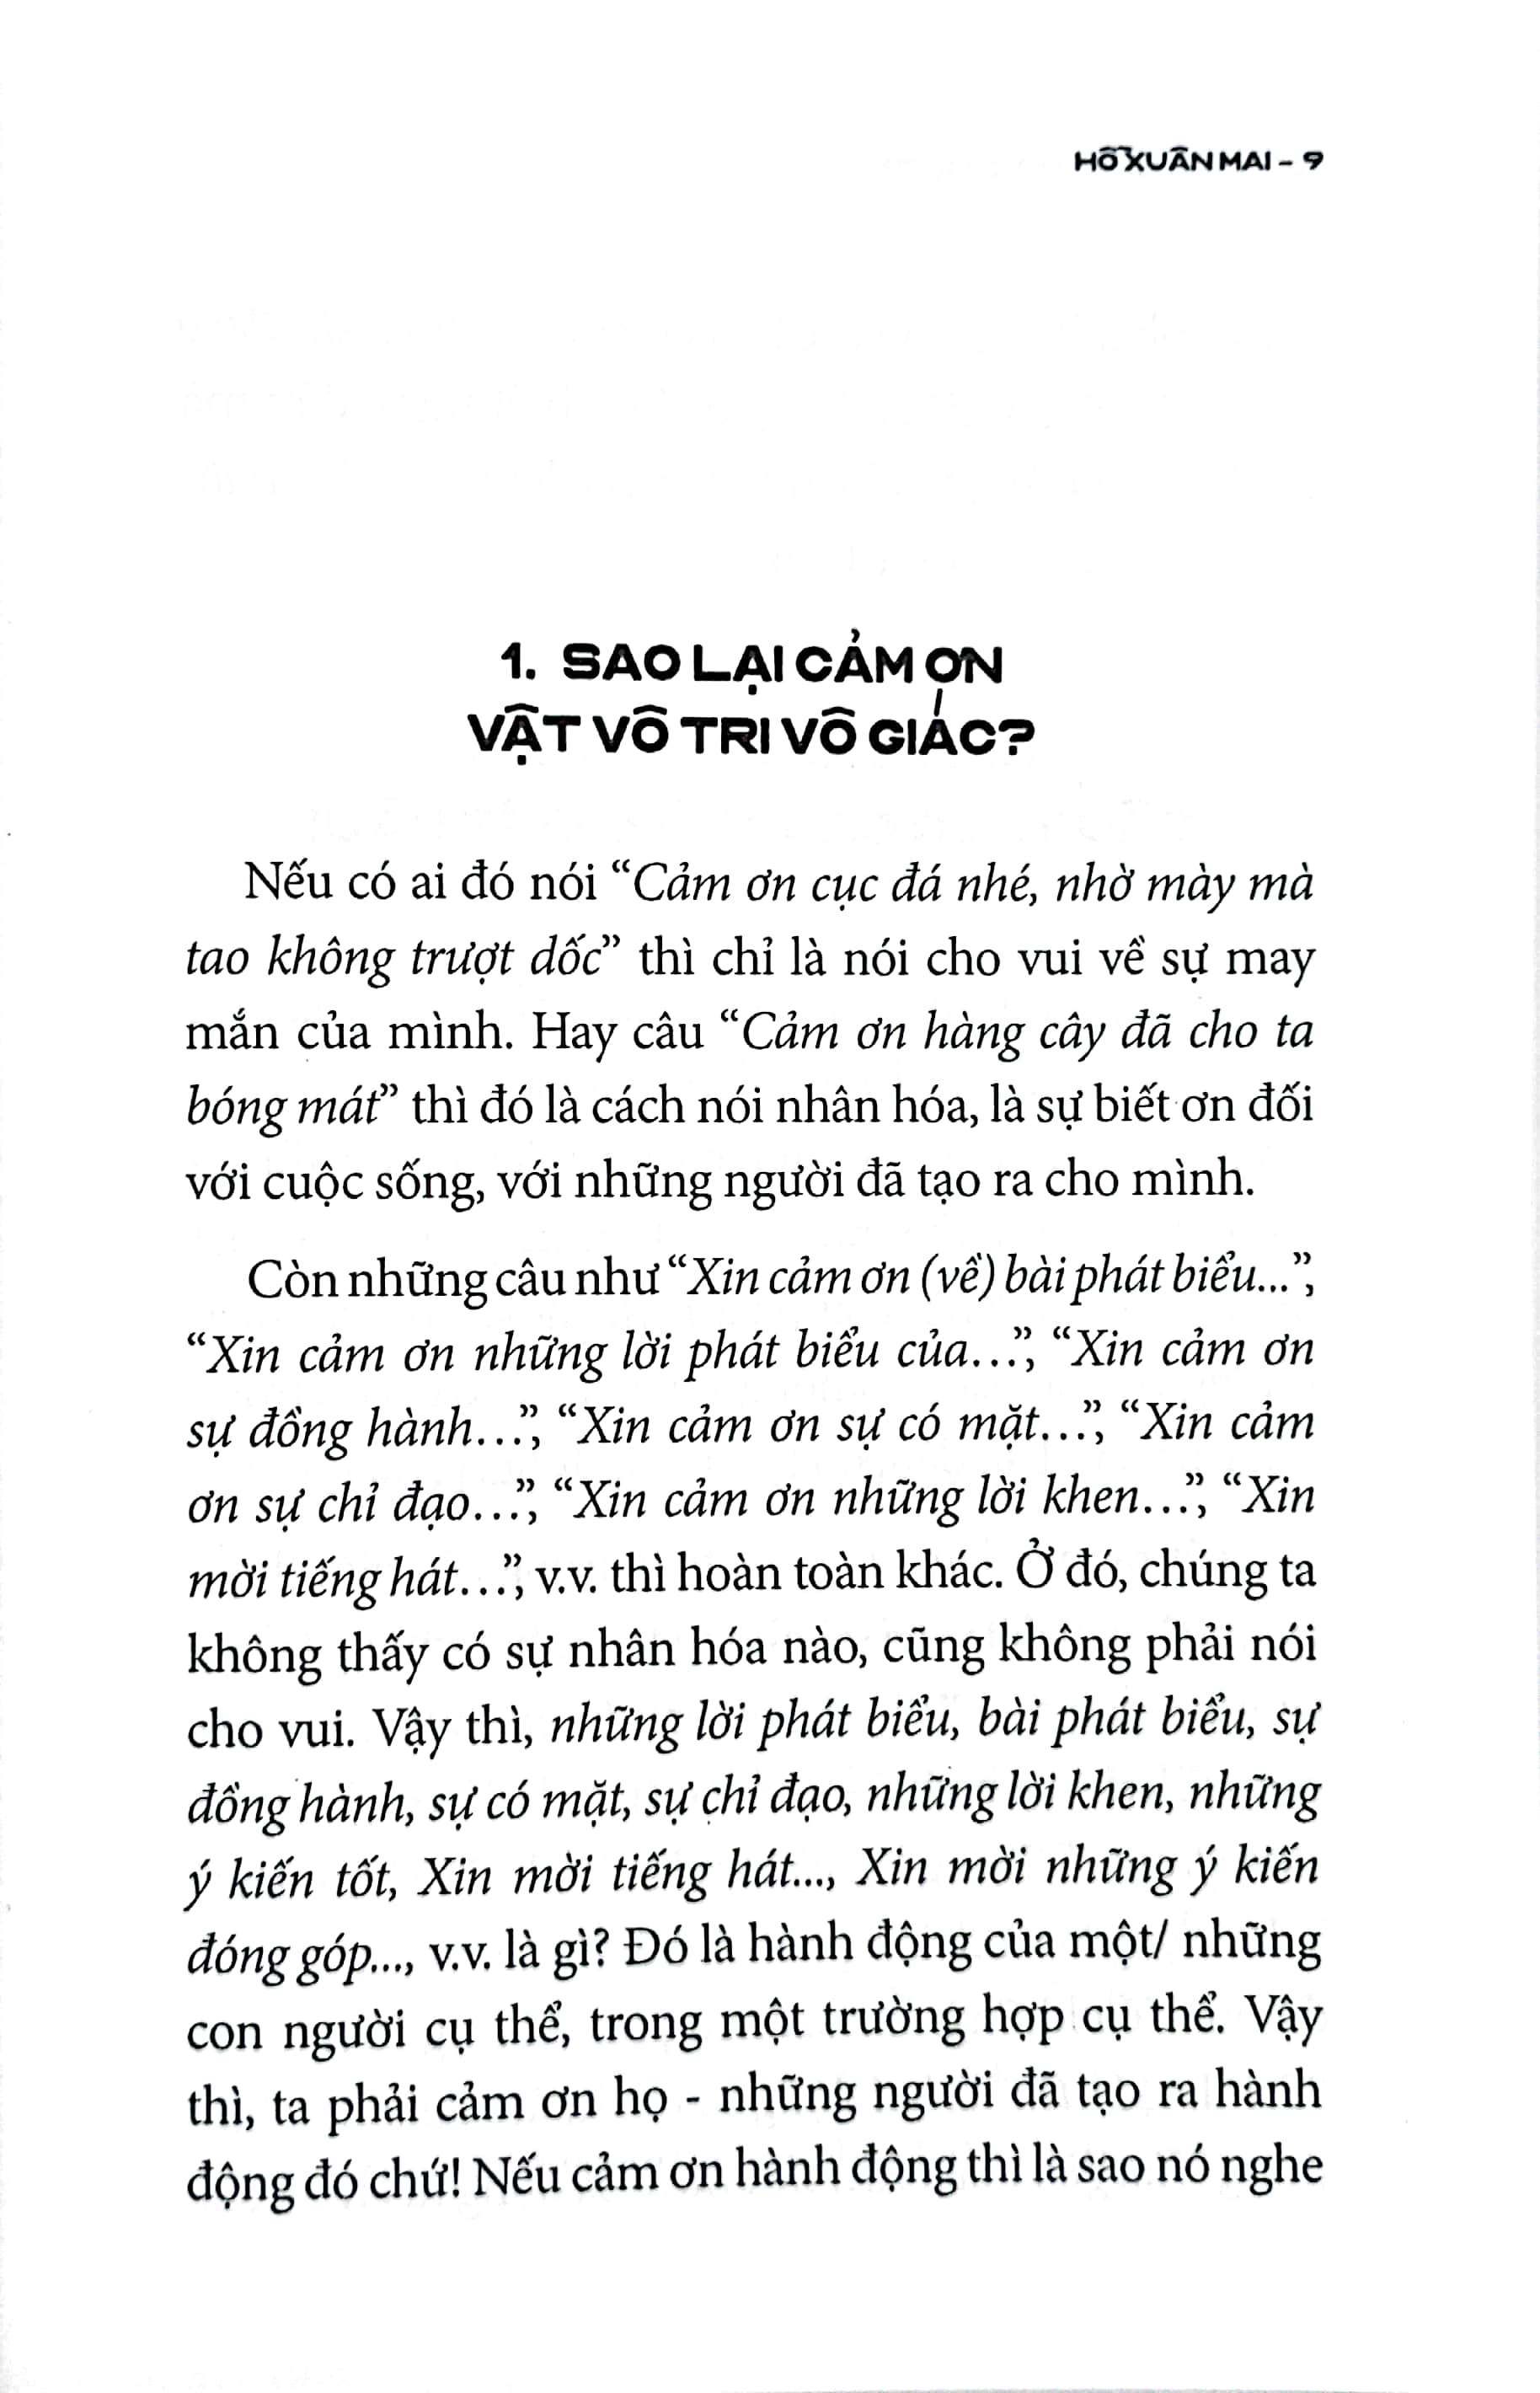 Ai Làm Đau Tiếng Việt? PDF